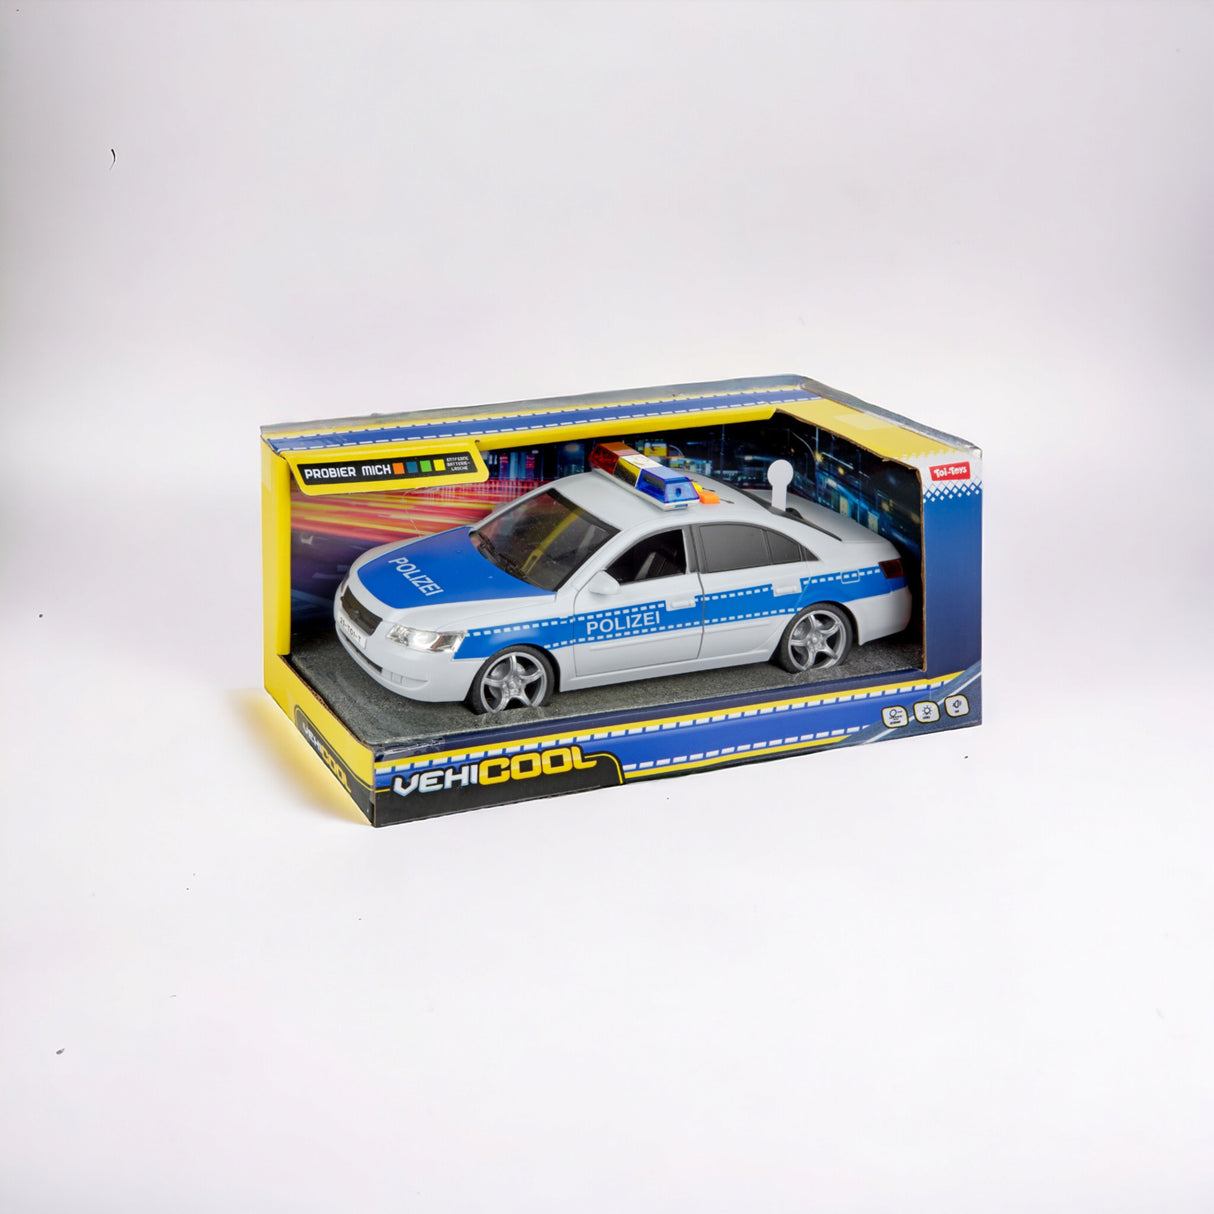 Spielzeug Polizeiauto Polizei Modellfahrzeug mit Friktionsmotor, Licht und Ton